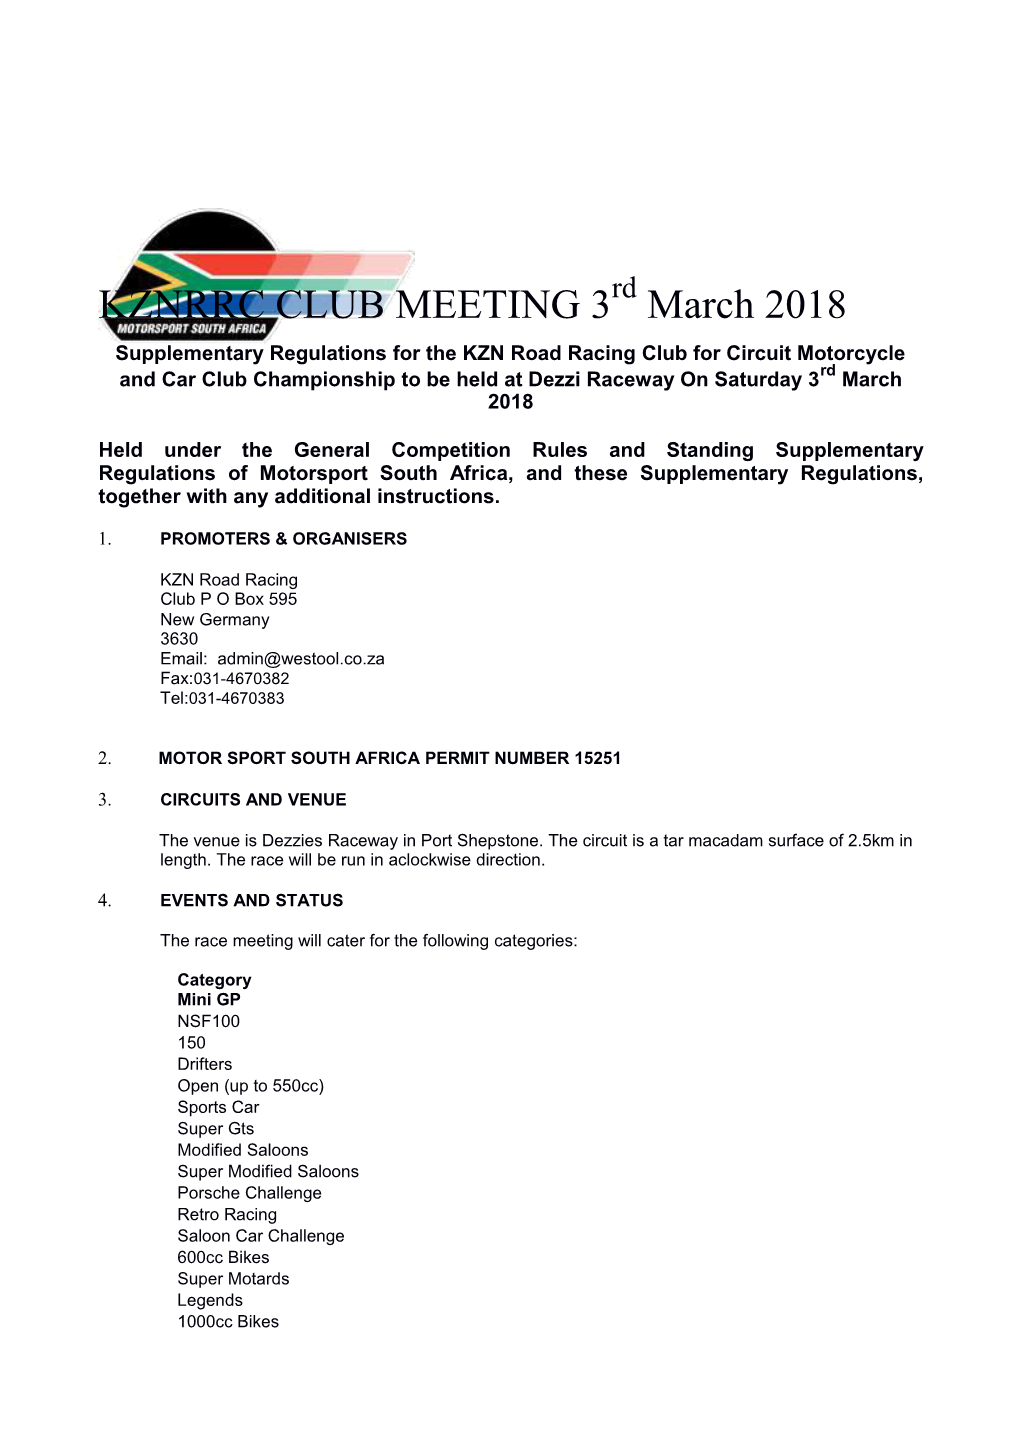 KZNRRC CLUB MEETING 3Rd March 2018